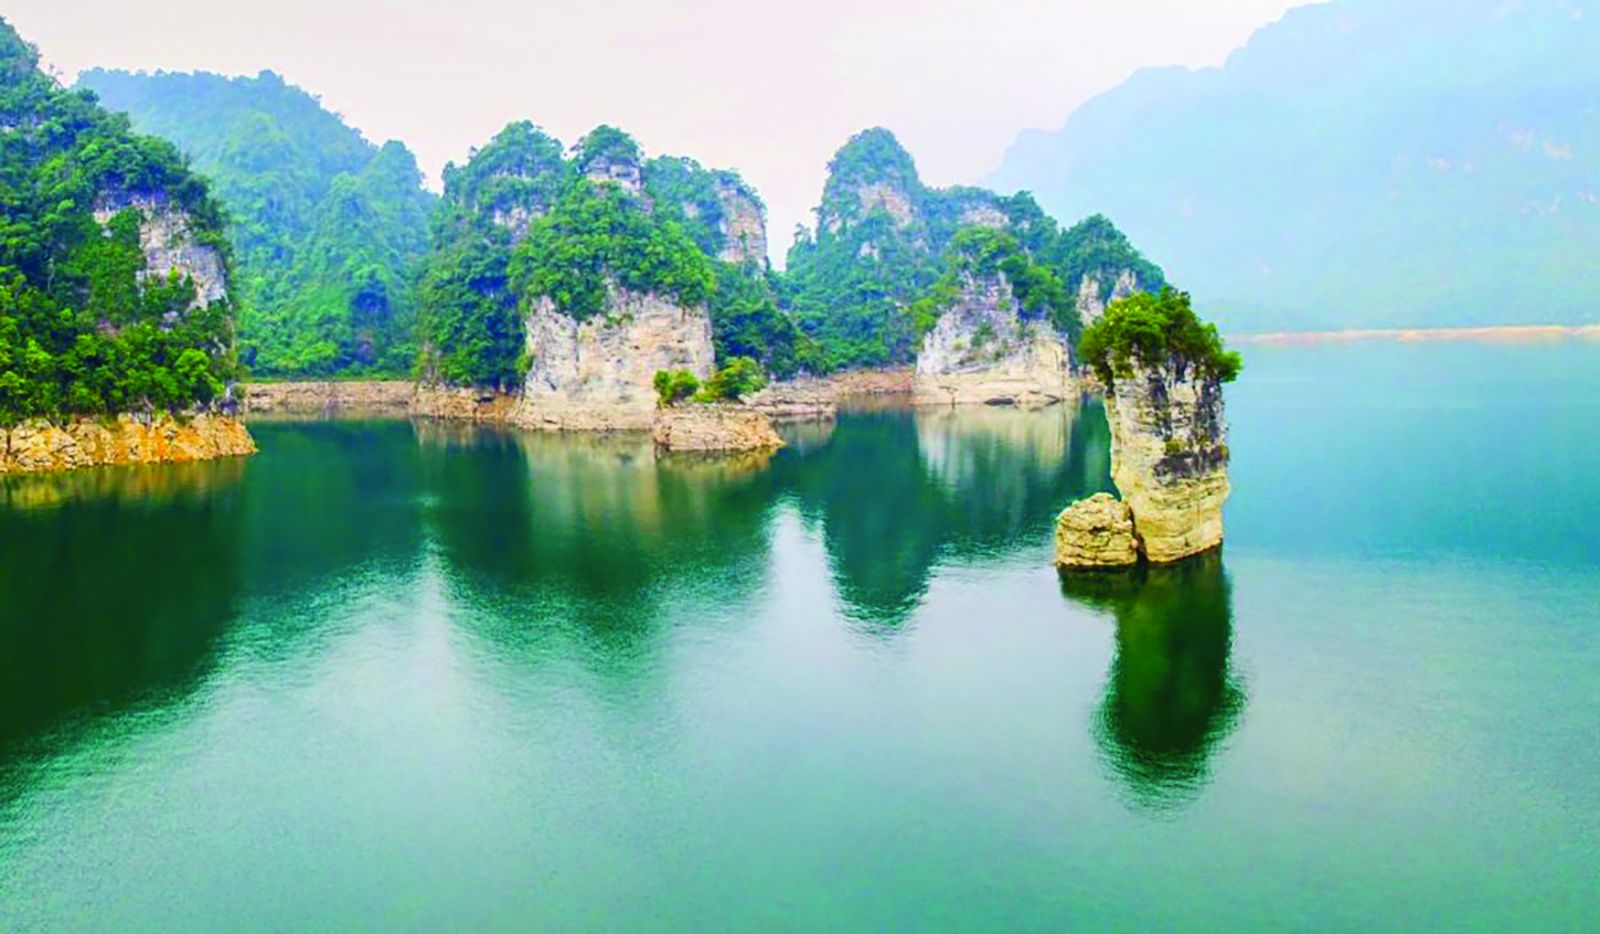  Danh thắng Cọc Vài, một biểu tượng của du lịch Tuyên Quang.